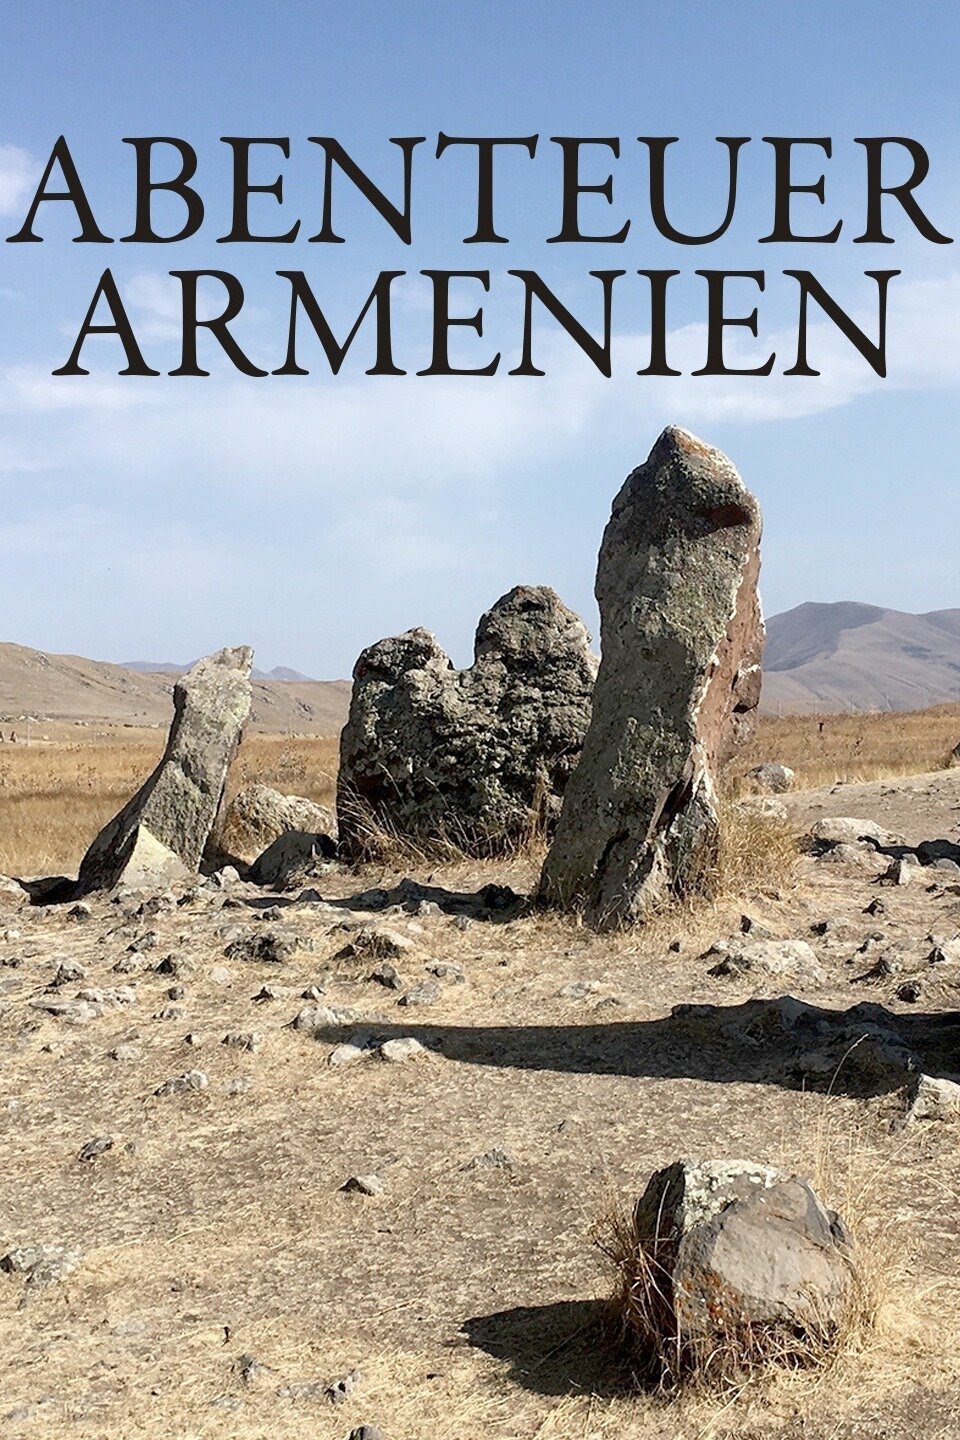 Armenien ist ein kleines Bergland im südlichen Kaukasus mit alten Traditionen, dramatischer Geschichte und atemberaubender Natur. Die Dokumentation erzählt Geschichten von Menschen in diesem Land und begleitet diese in ihrem Alltag.